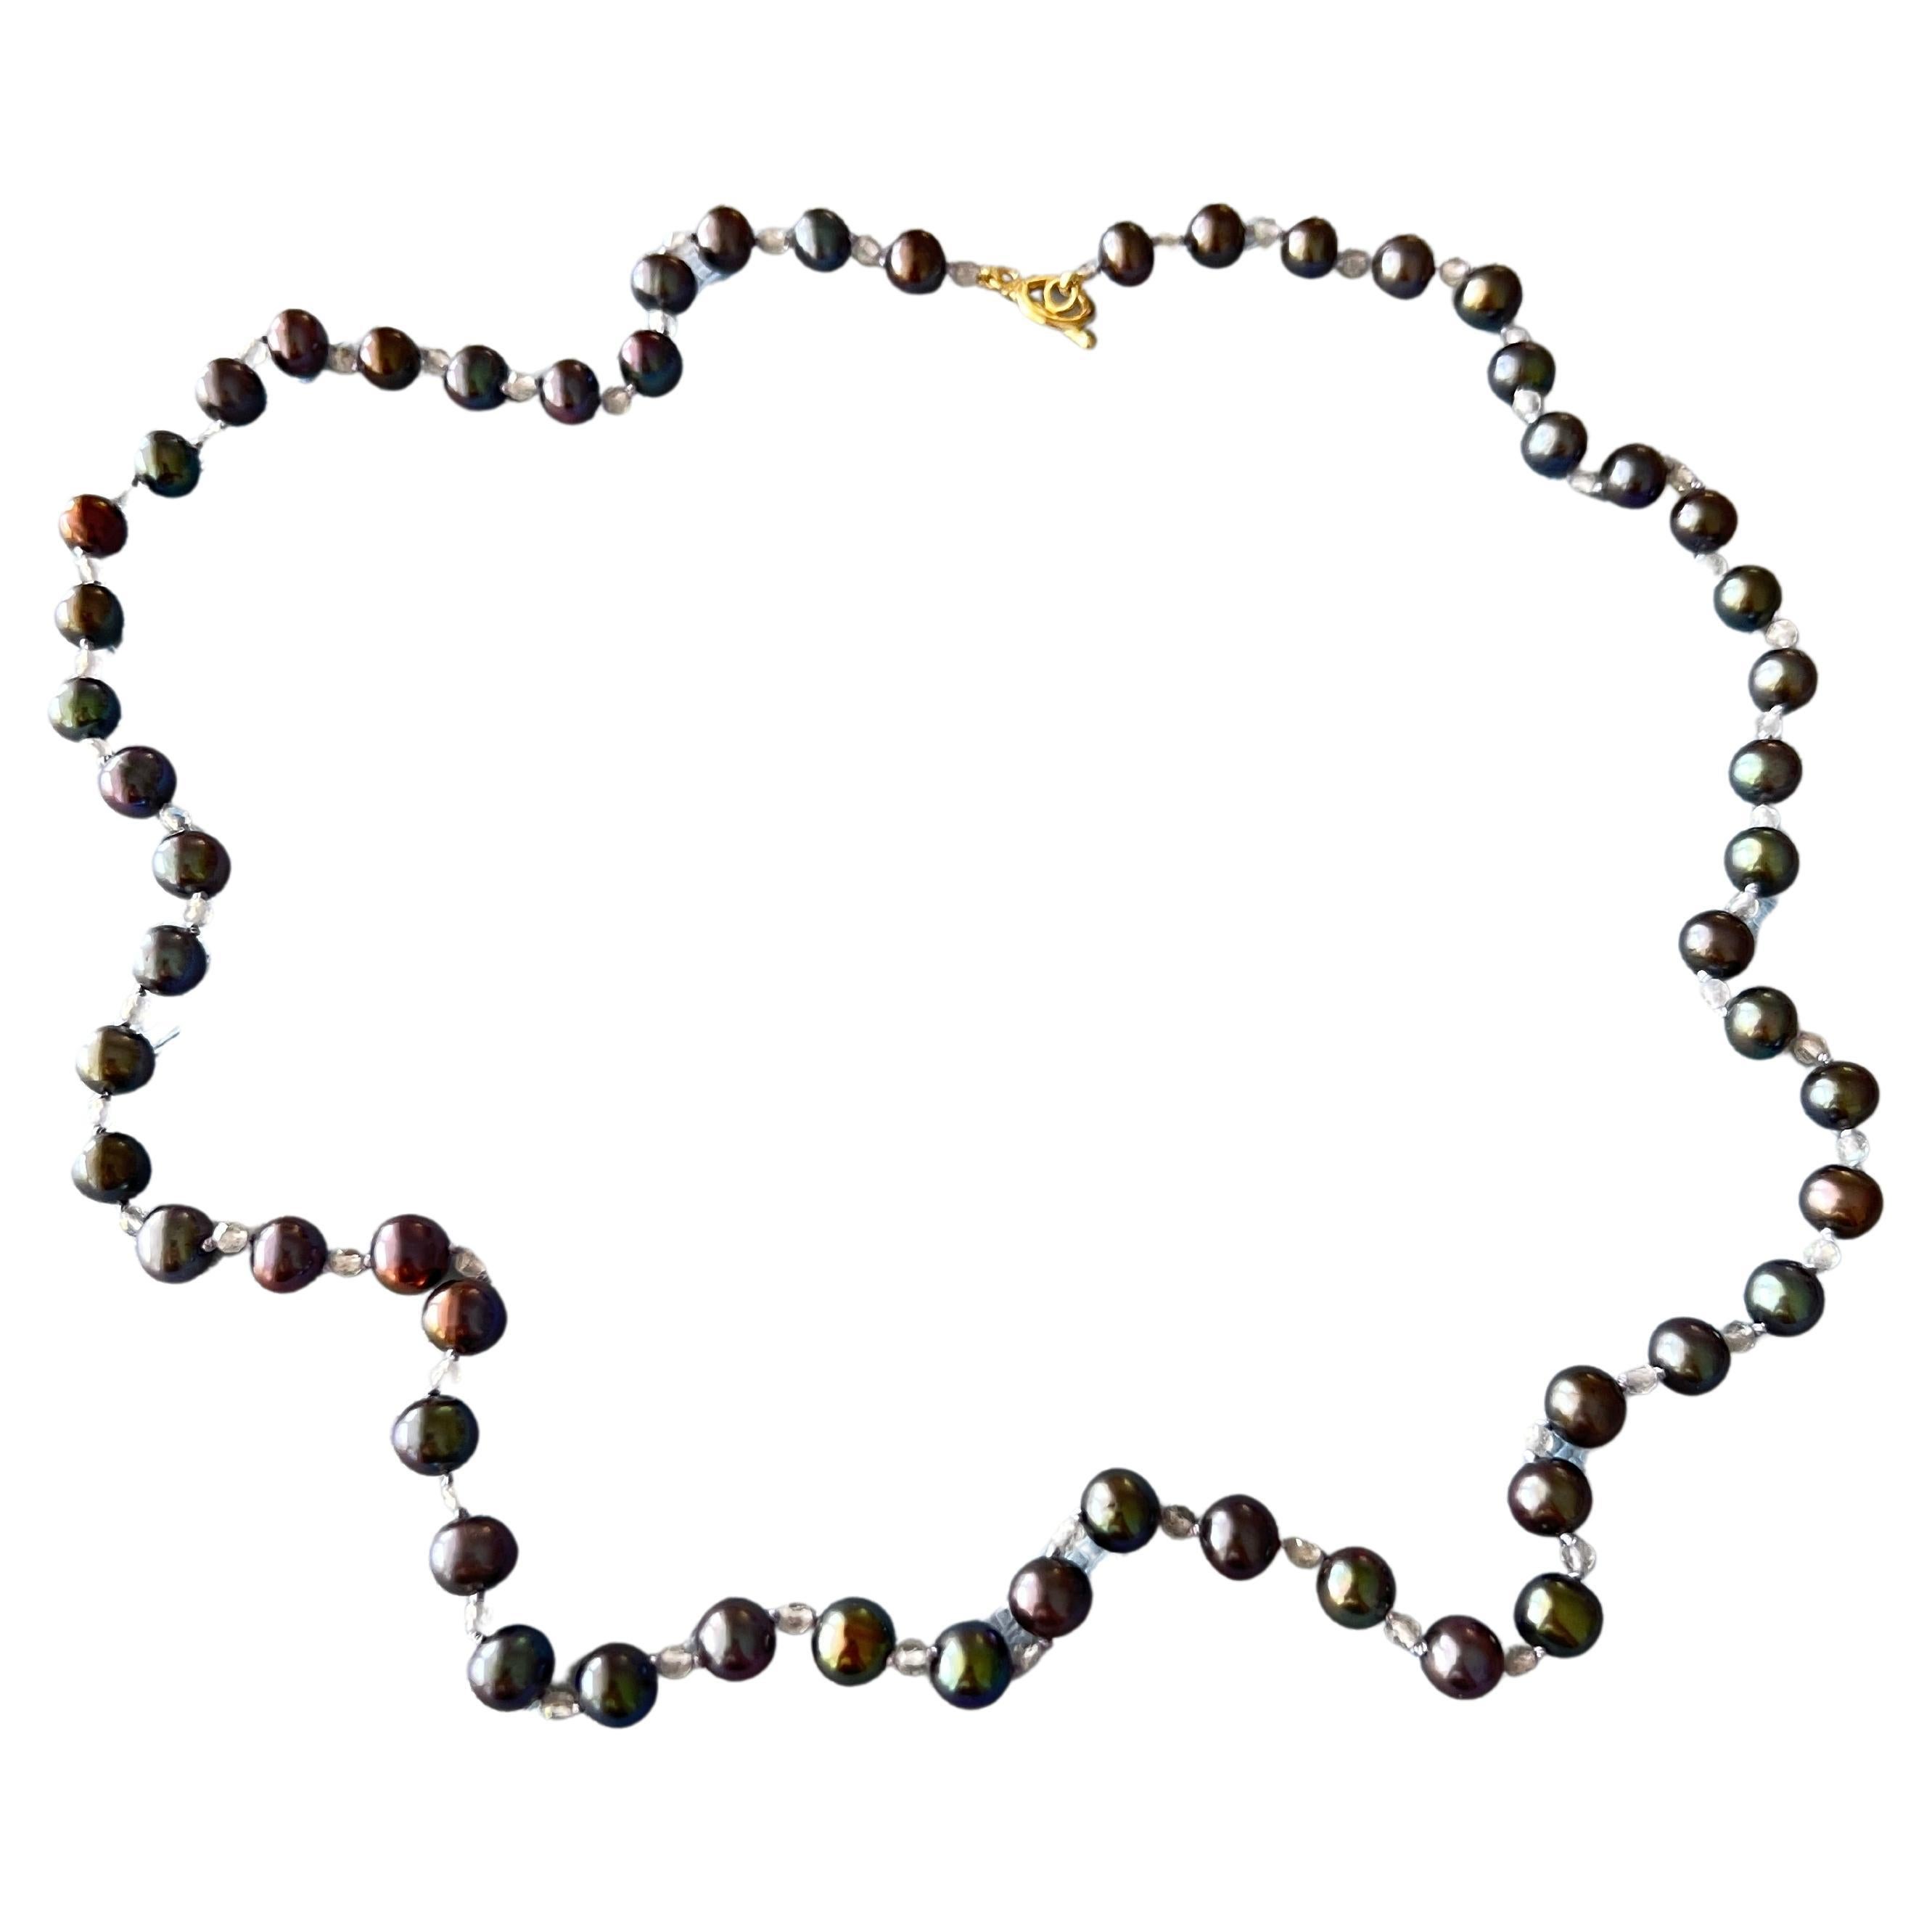 Mittellange schwarze Perlen-Labradorit-Halskette mit Goldverschluss

Länge: Ungefähr Halskette 24